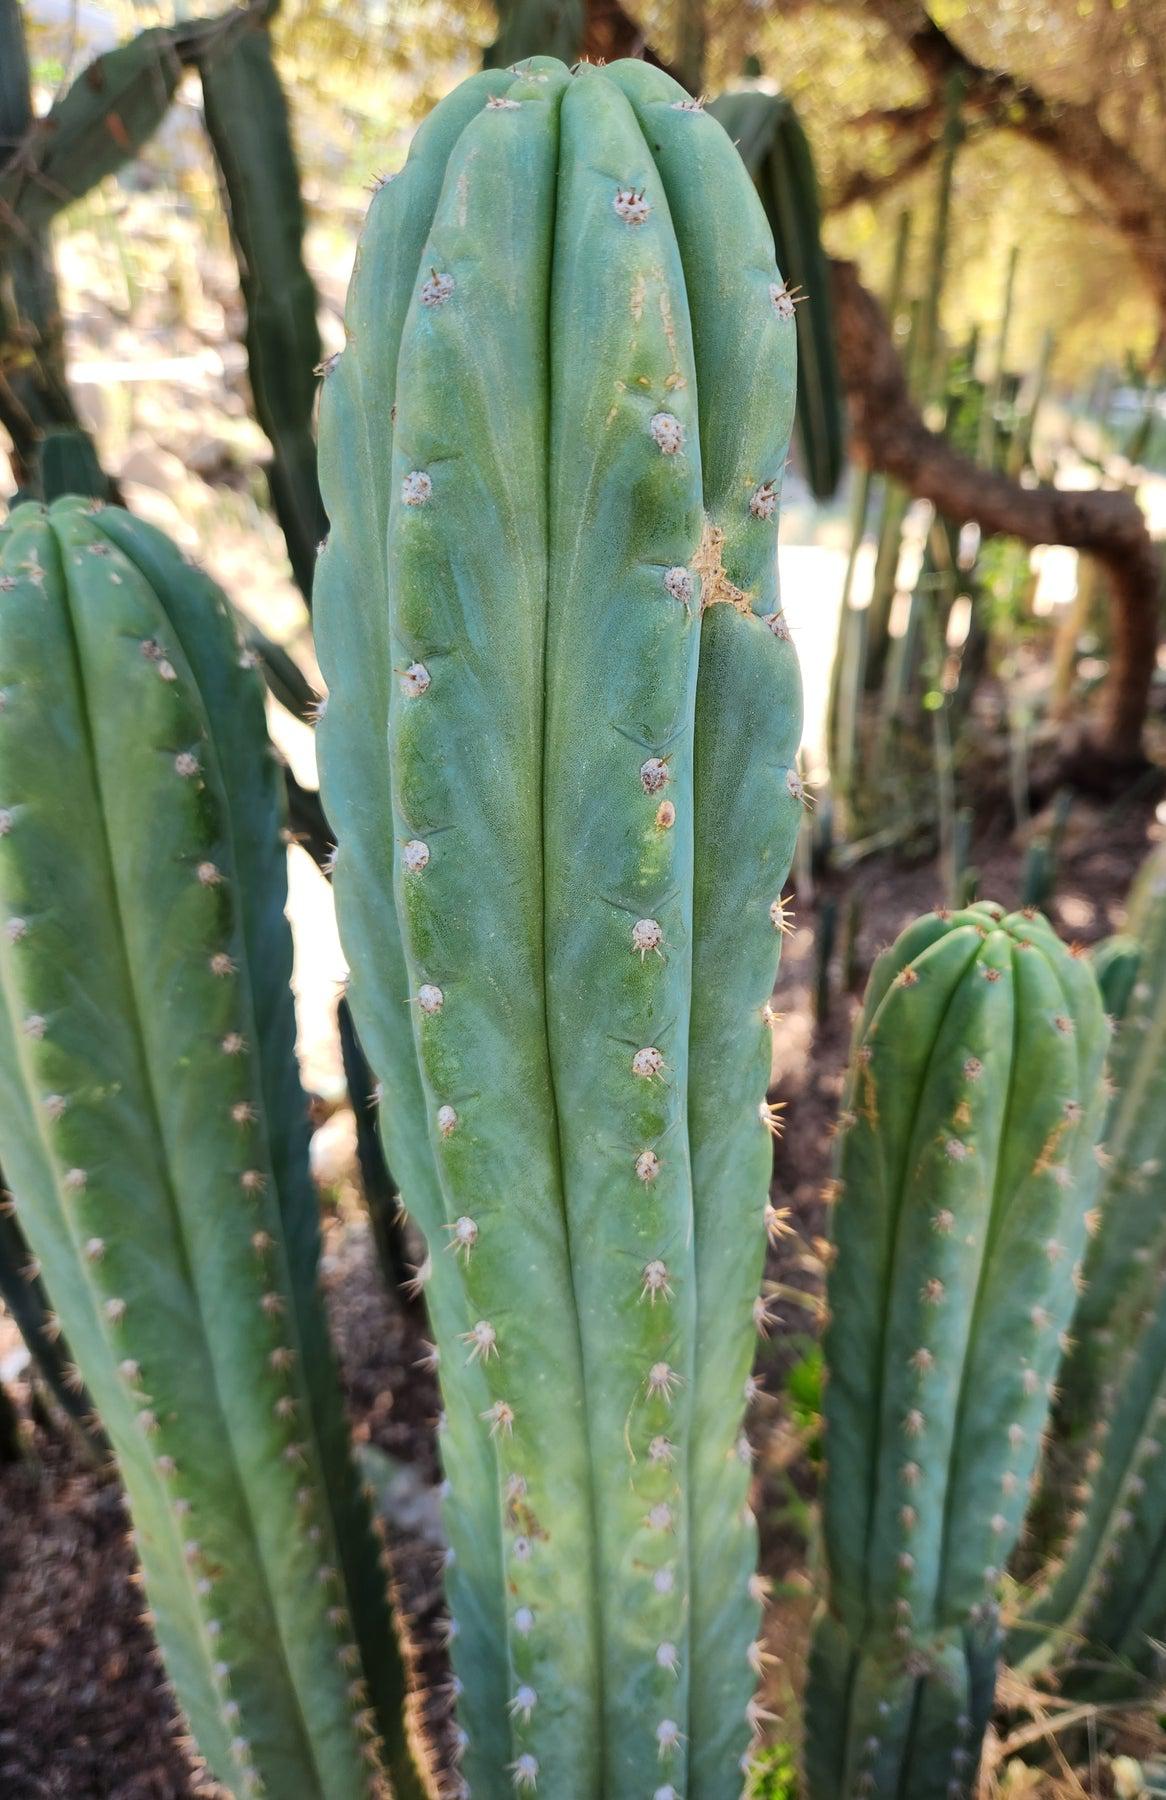 #EC250 EXACT Trichocereus Pachanoi "soontobenamed" Cactus Cutting 7-8"-Cactus - Large - Exact-The Succulent Source